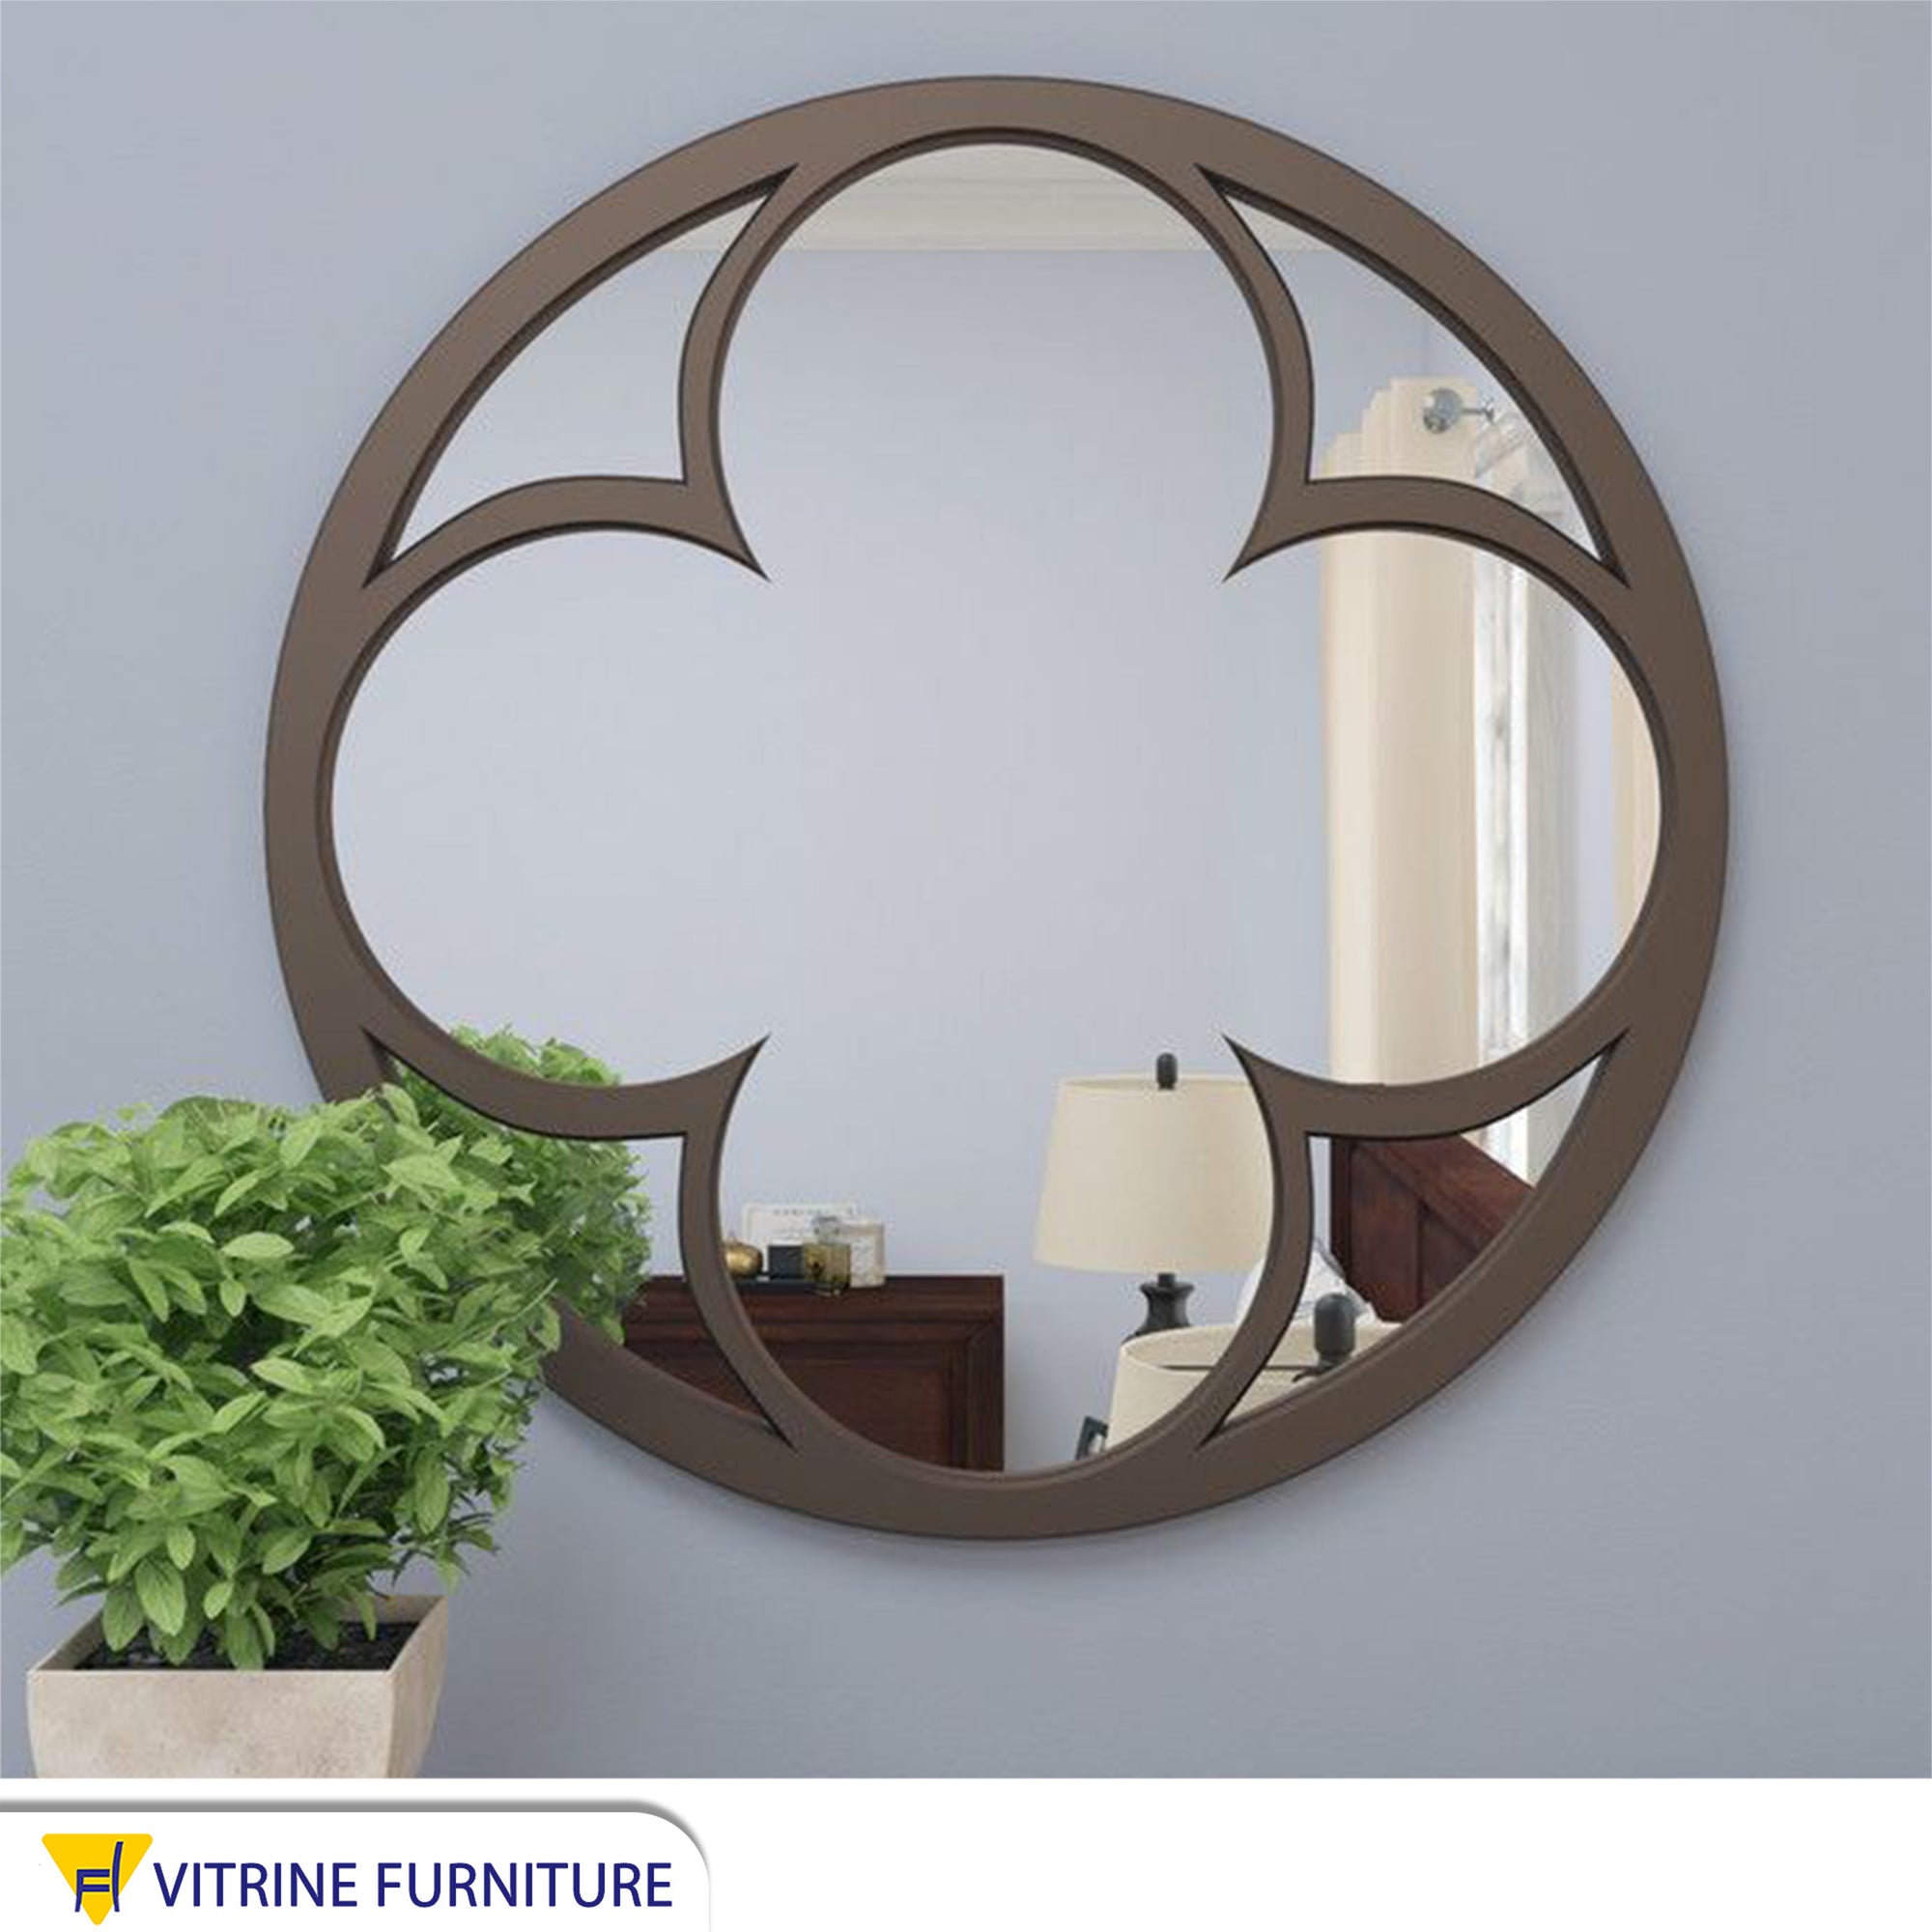 A circular mirror with a rose interior